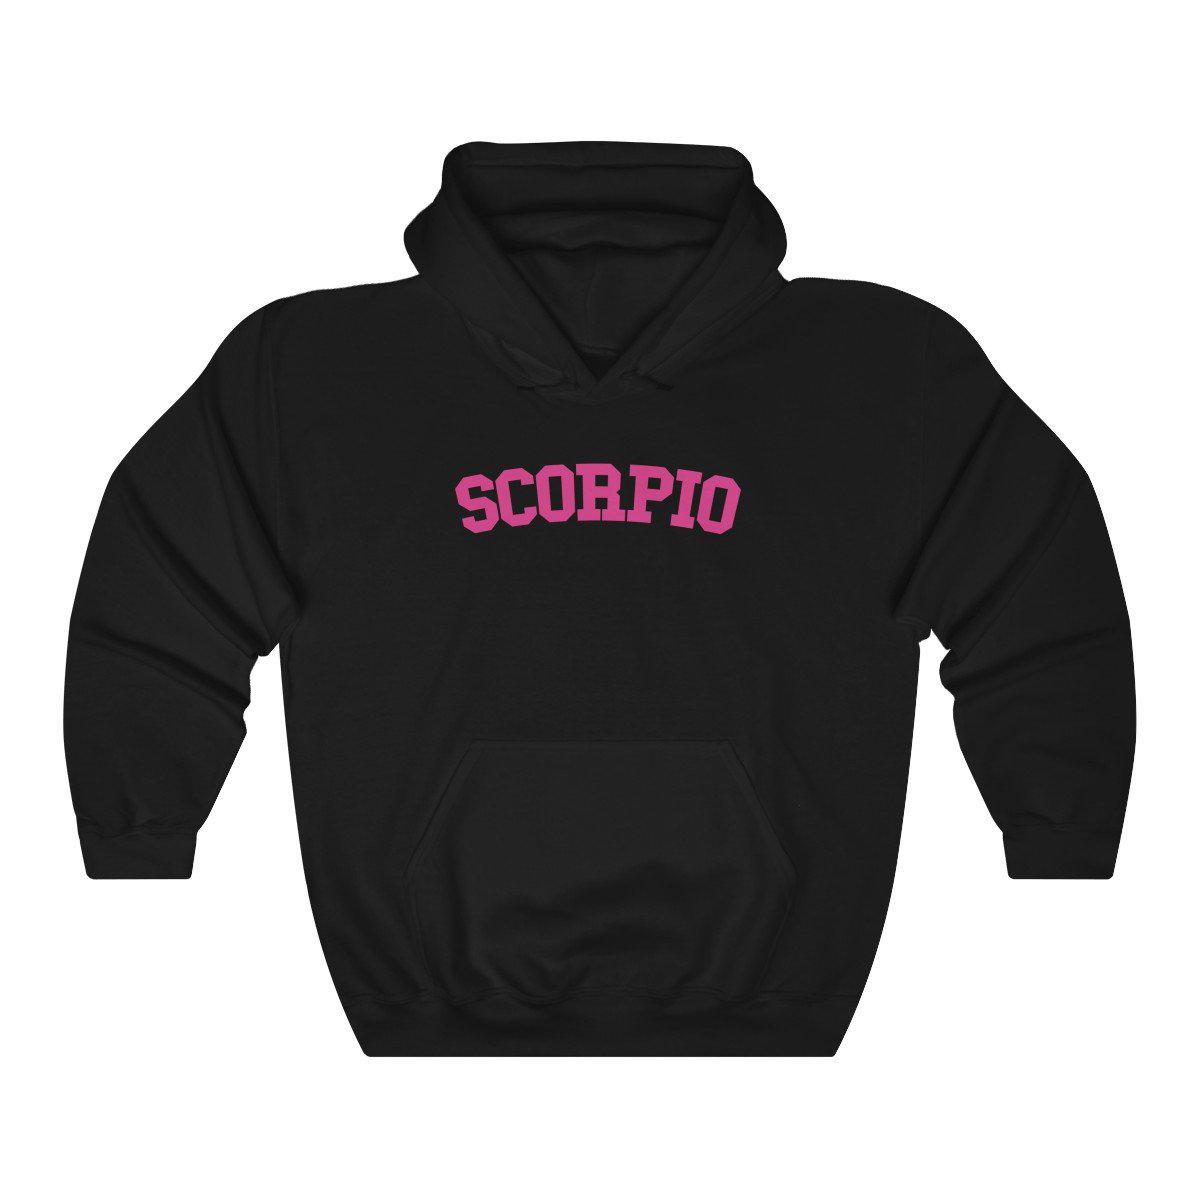 Scorpio Collegiate Hoodie